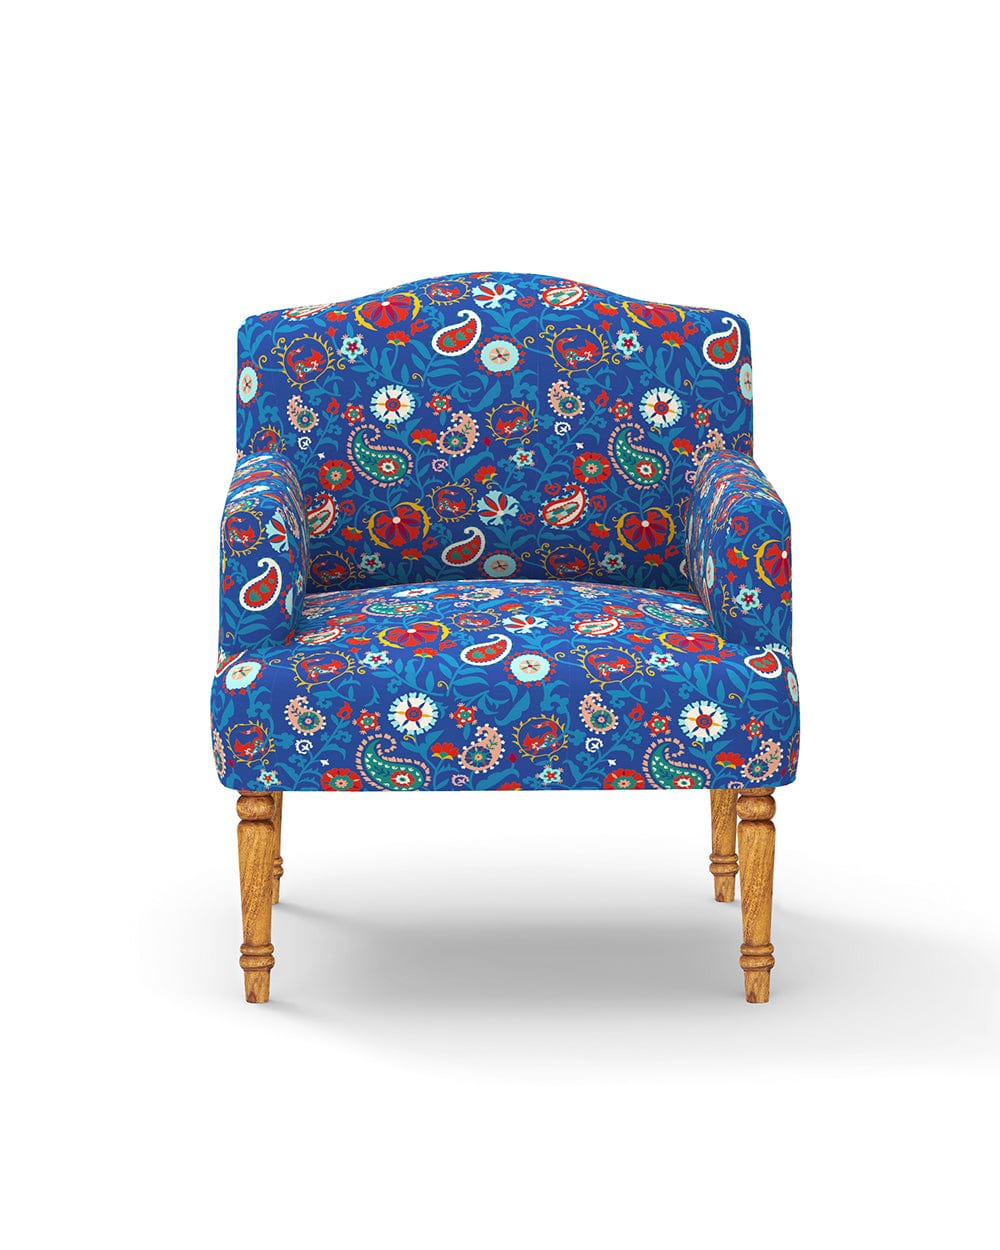 Chumbak Nawaab Arm Chair - India Paisleys Blue